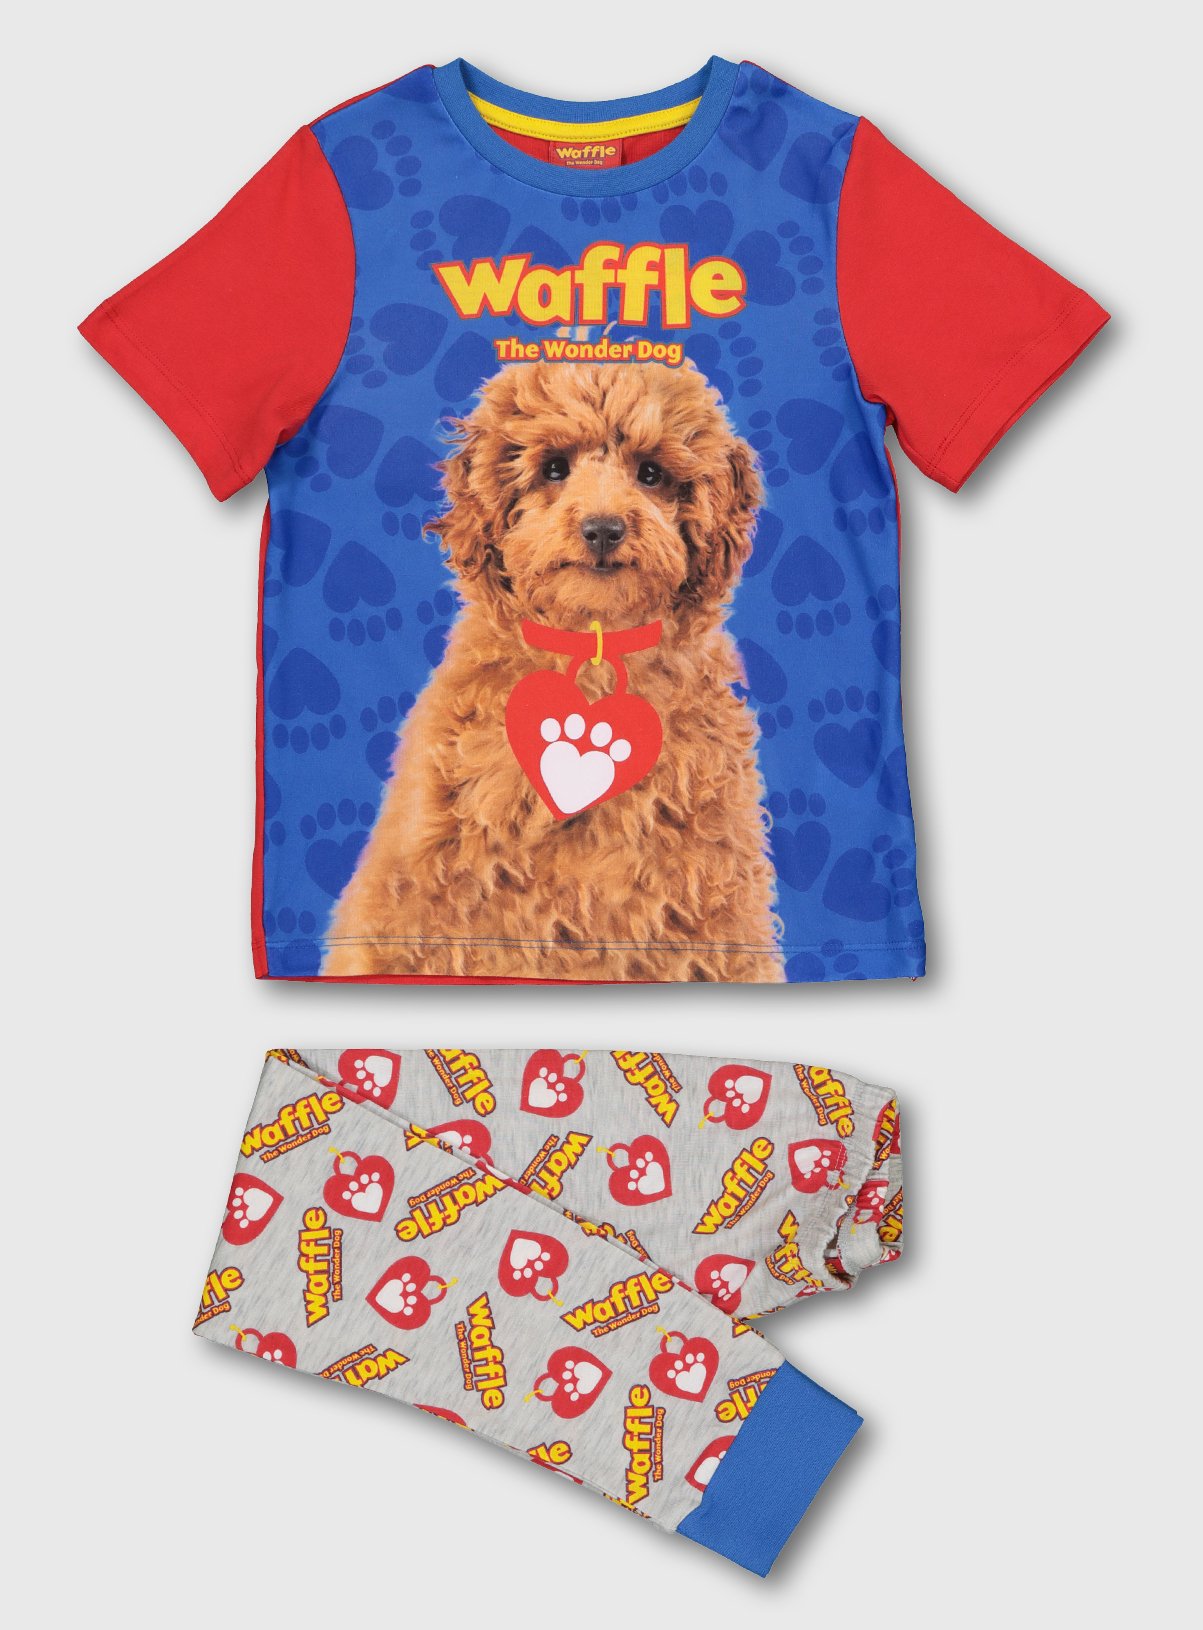 waffle the wonder dog argos